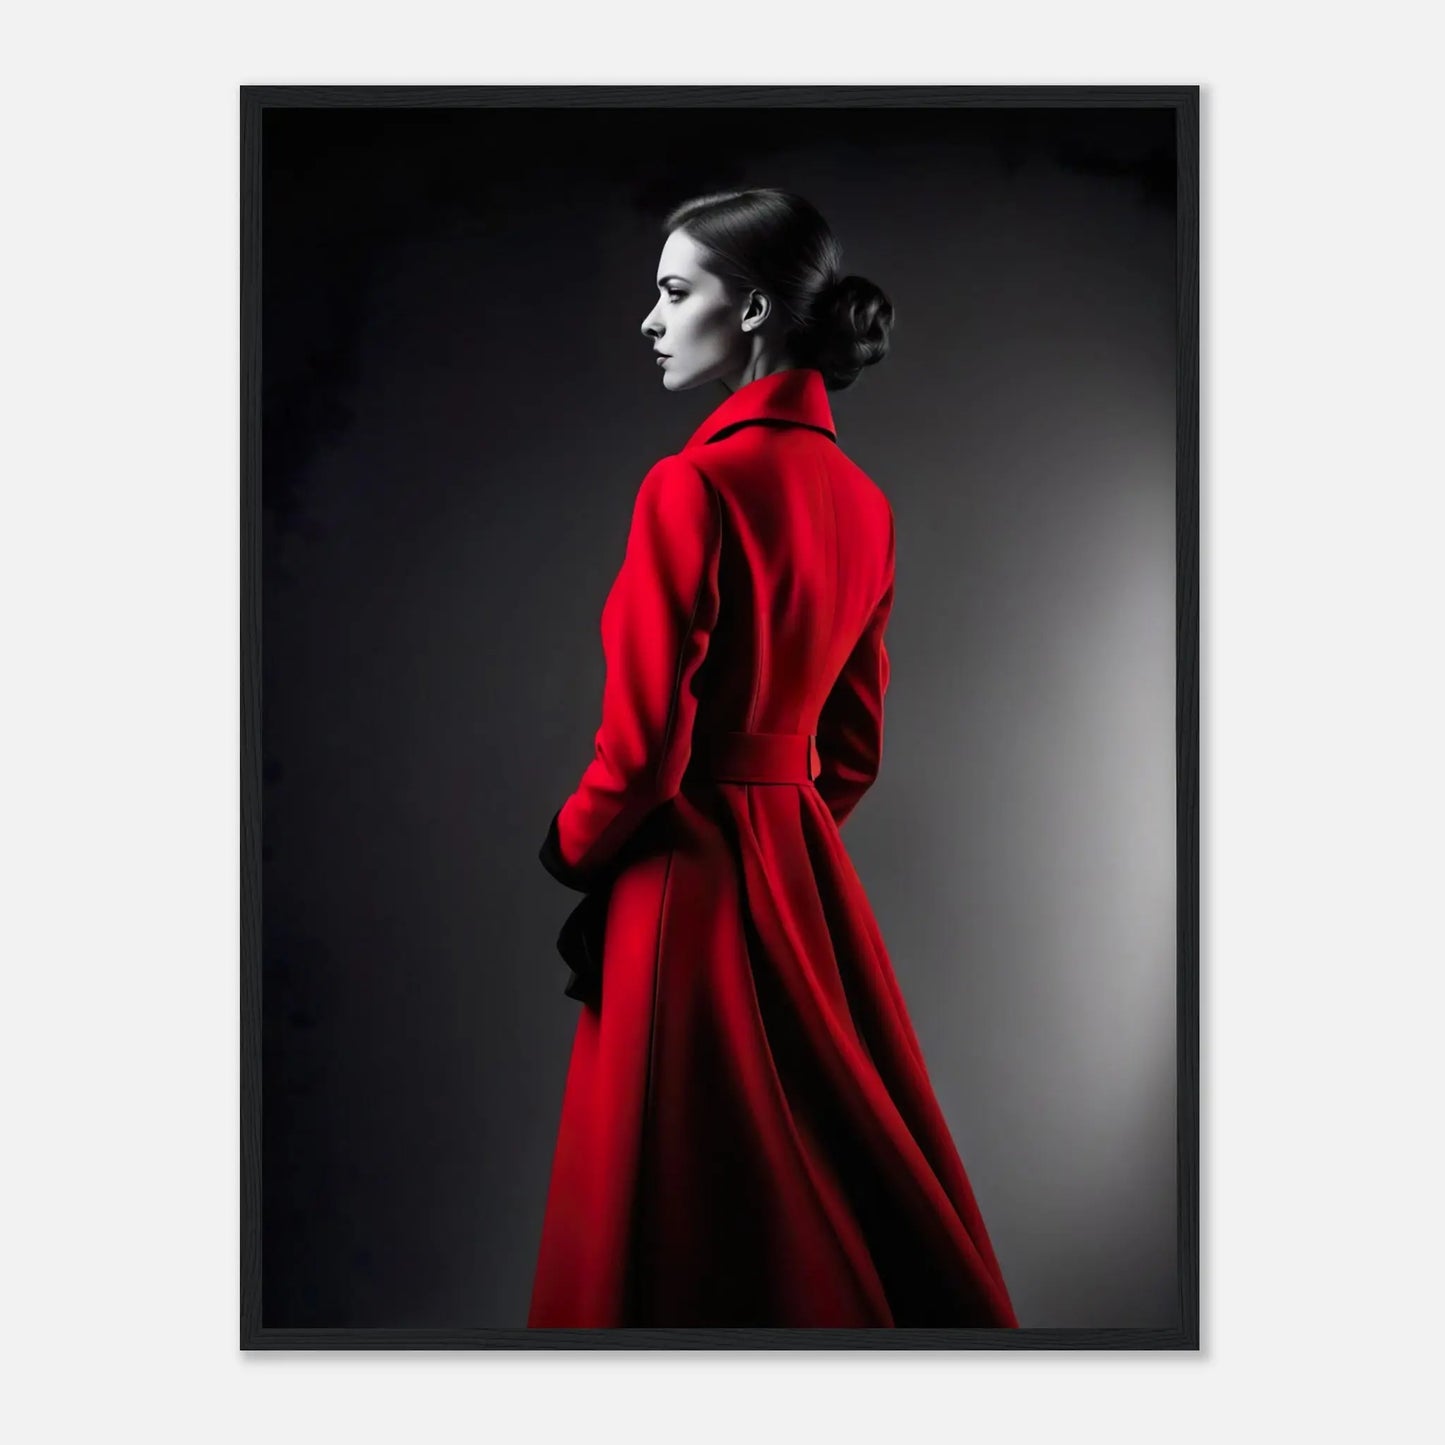 Gerahmtes Premium-Poster - Frau im roten Mantel - Schwarz-Weiß, KI-Kunst - RolConArt, Schwarz-Weiß mit Akzentfarben, 60x80-cm-24x32-Schwarzer-Rahmen